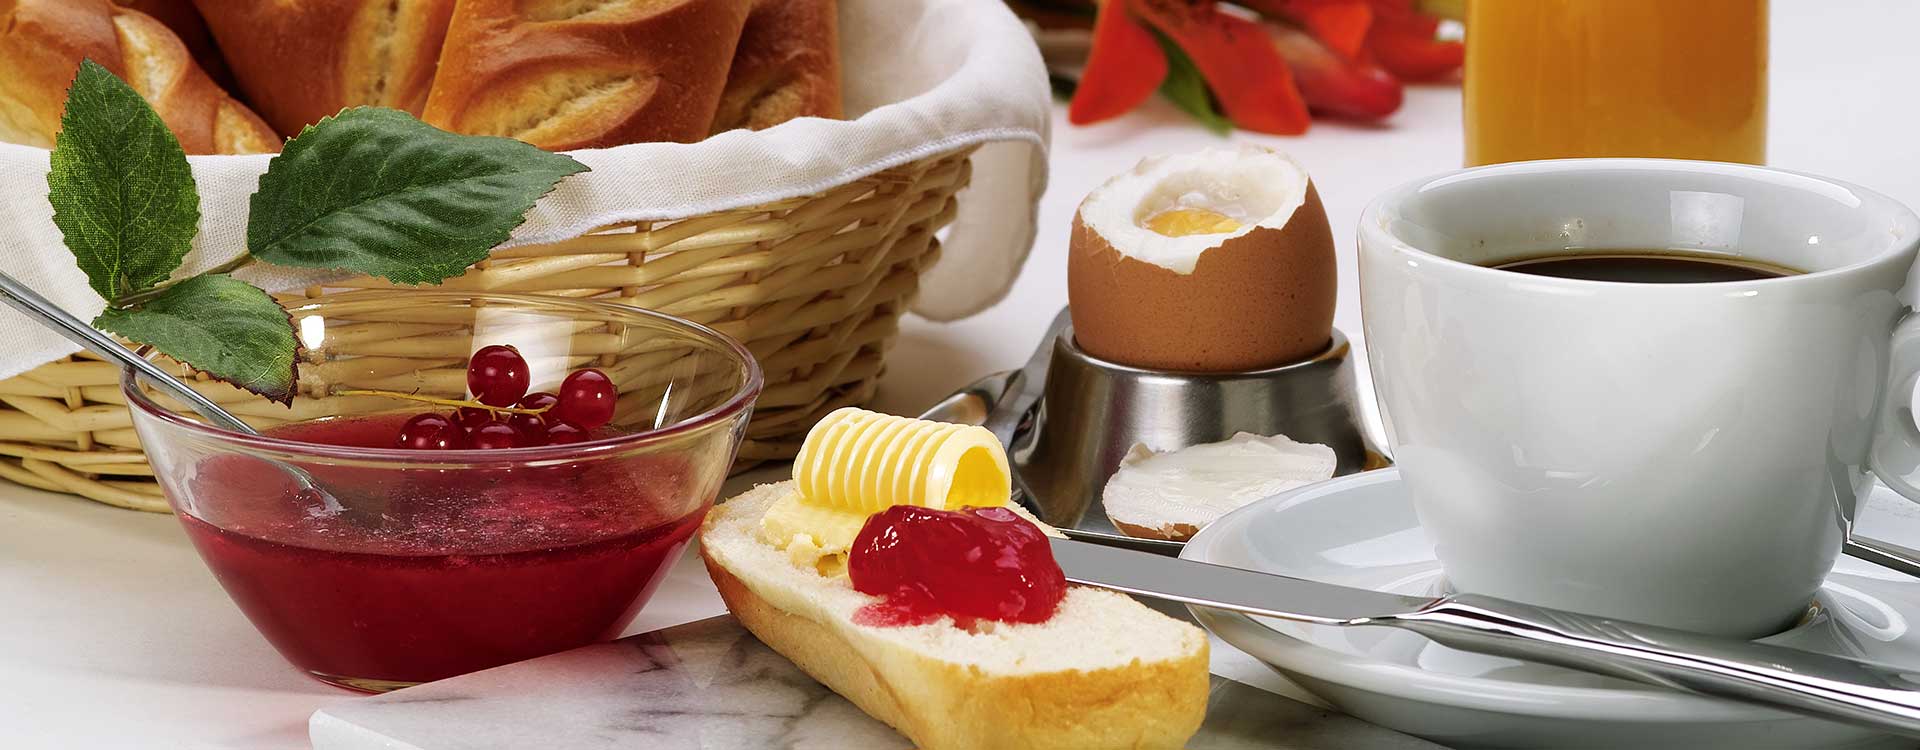 Frühstücksvariation mit Kaffee, Ei und Marmelade